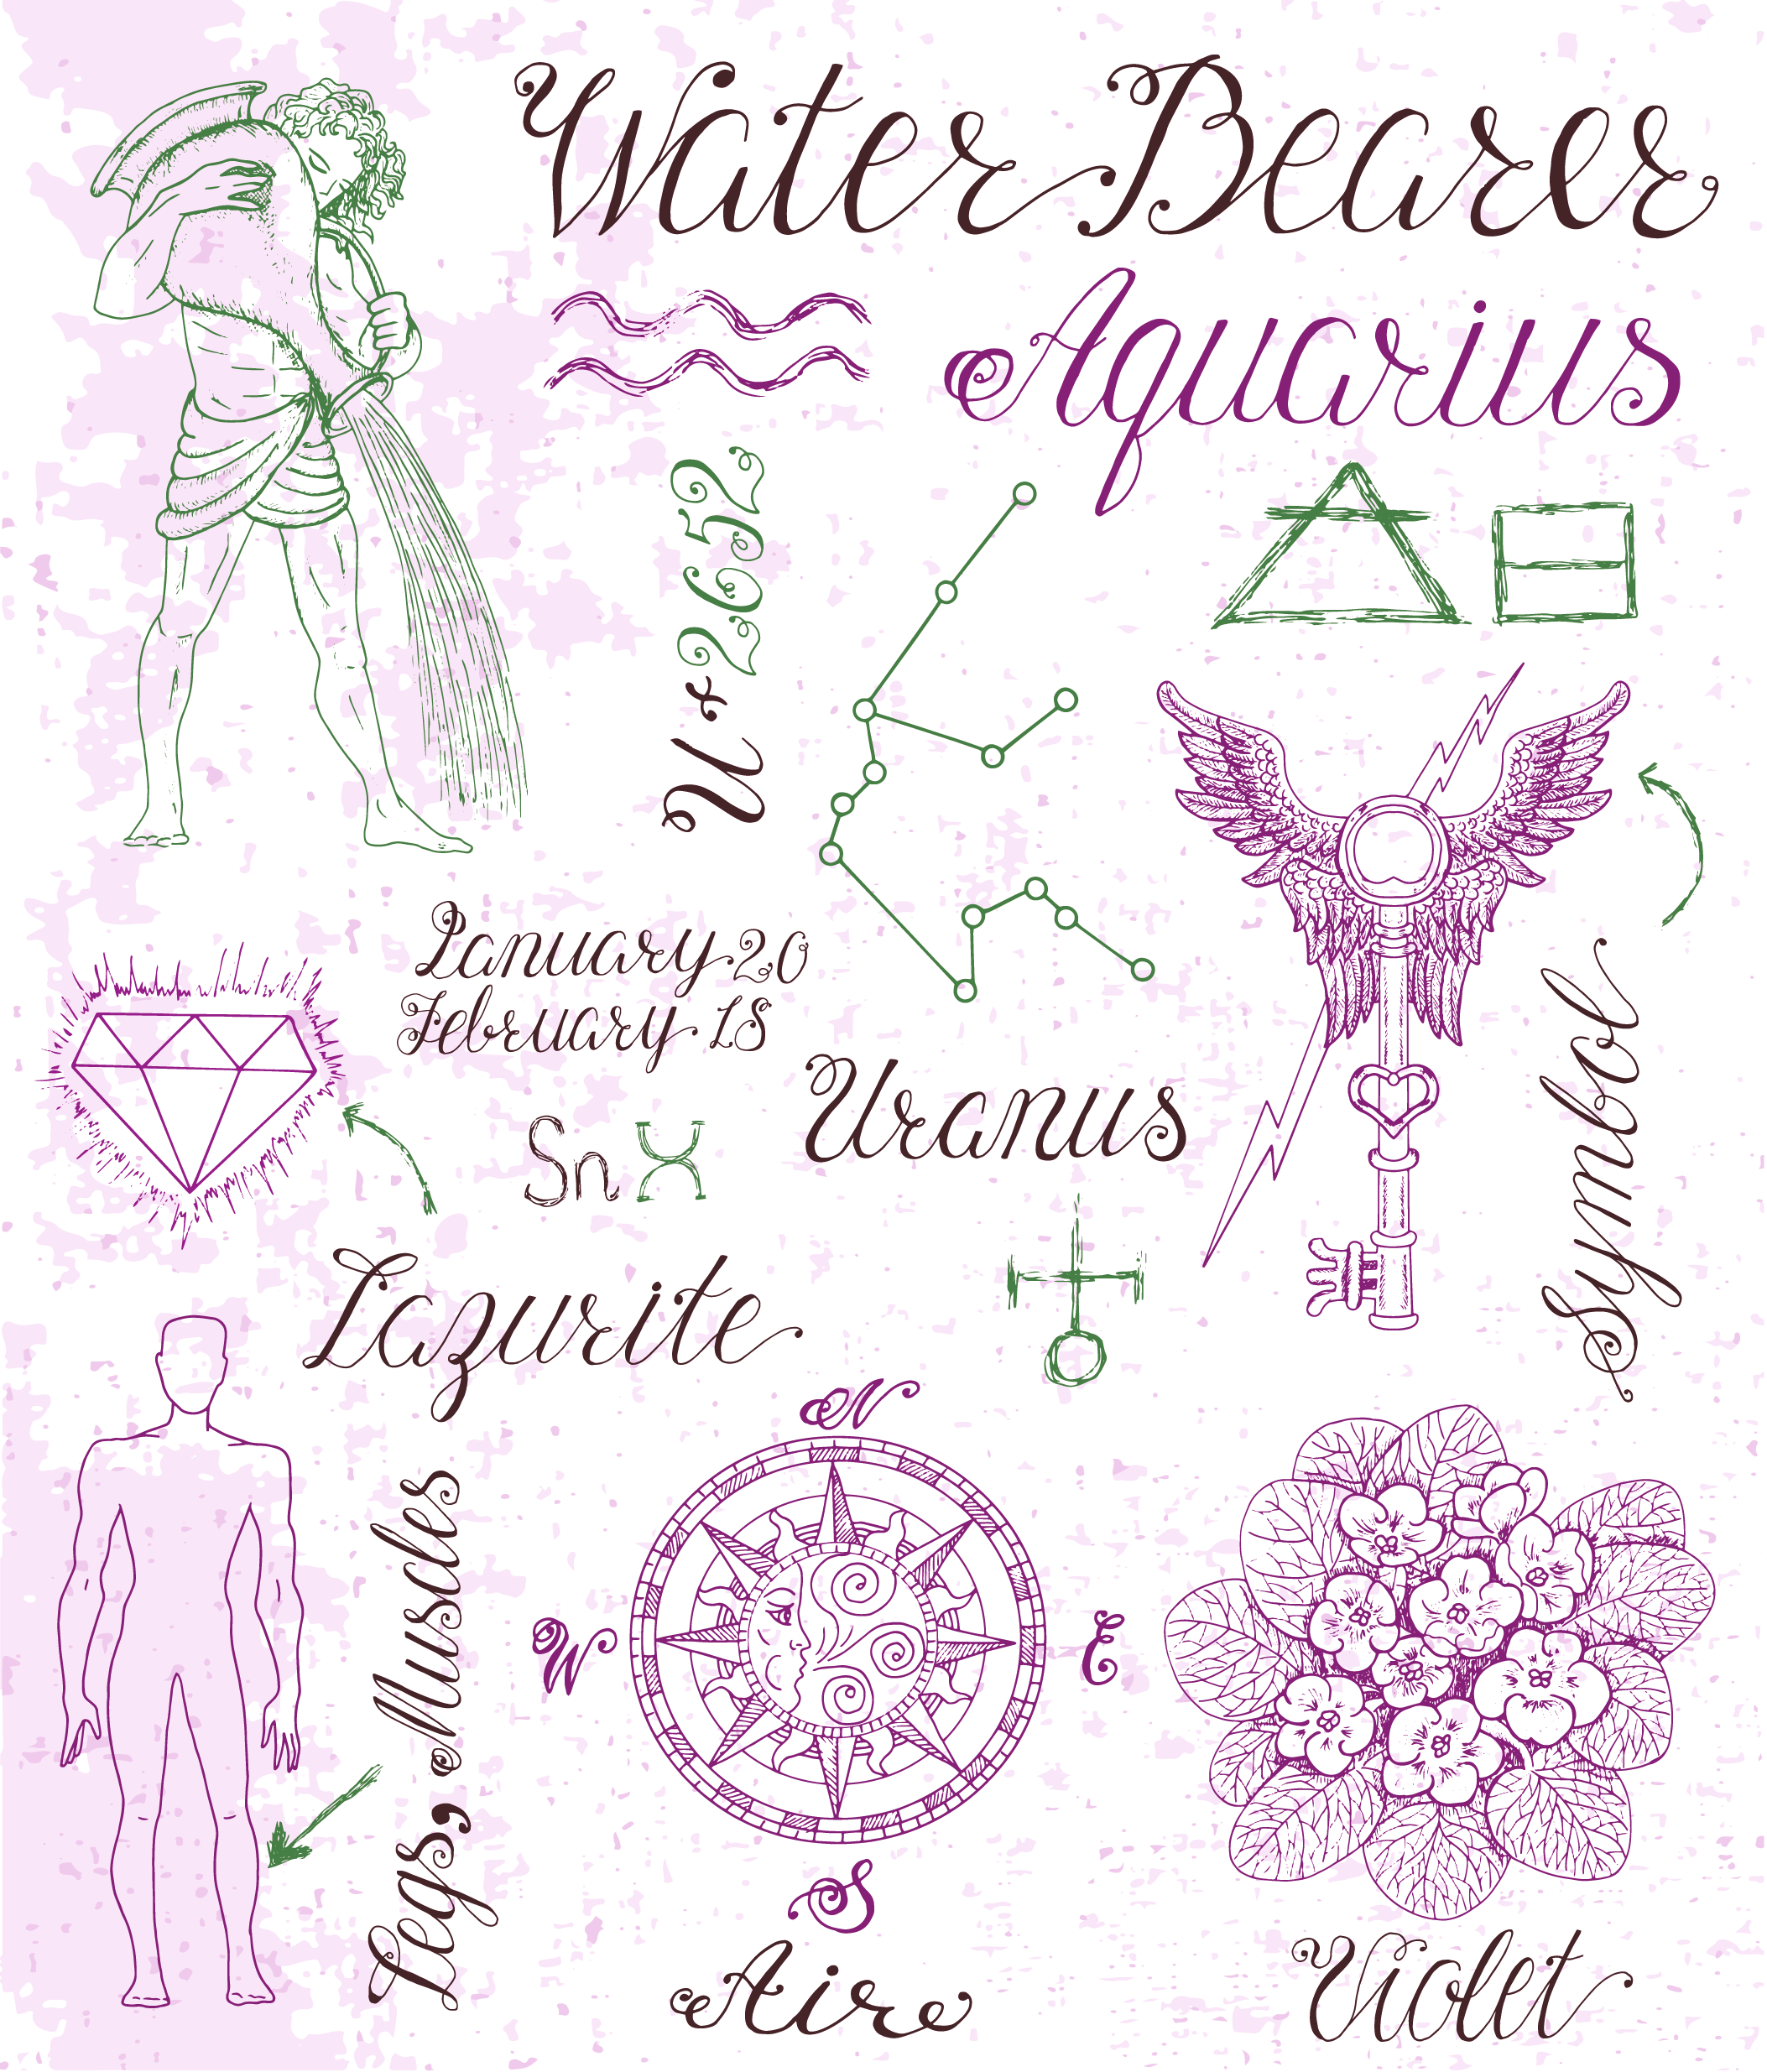 Aquarius Signs And Symbols